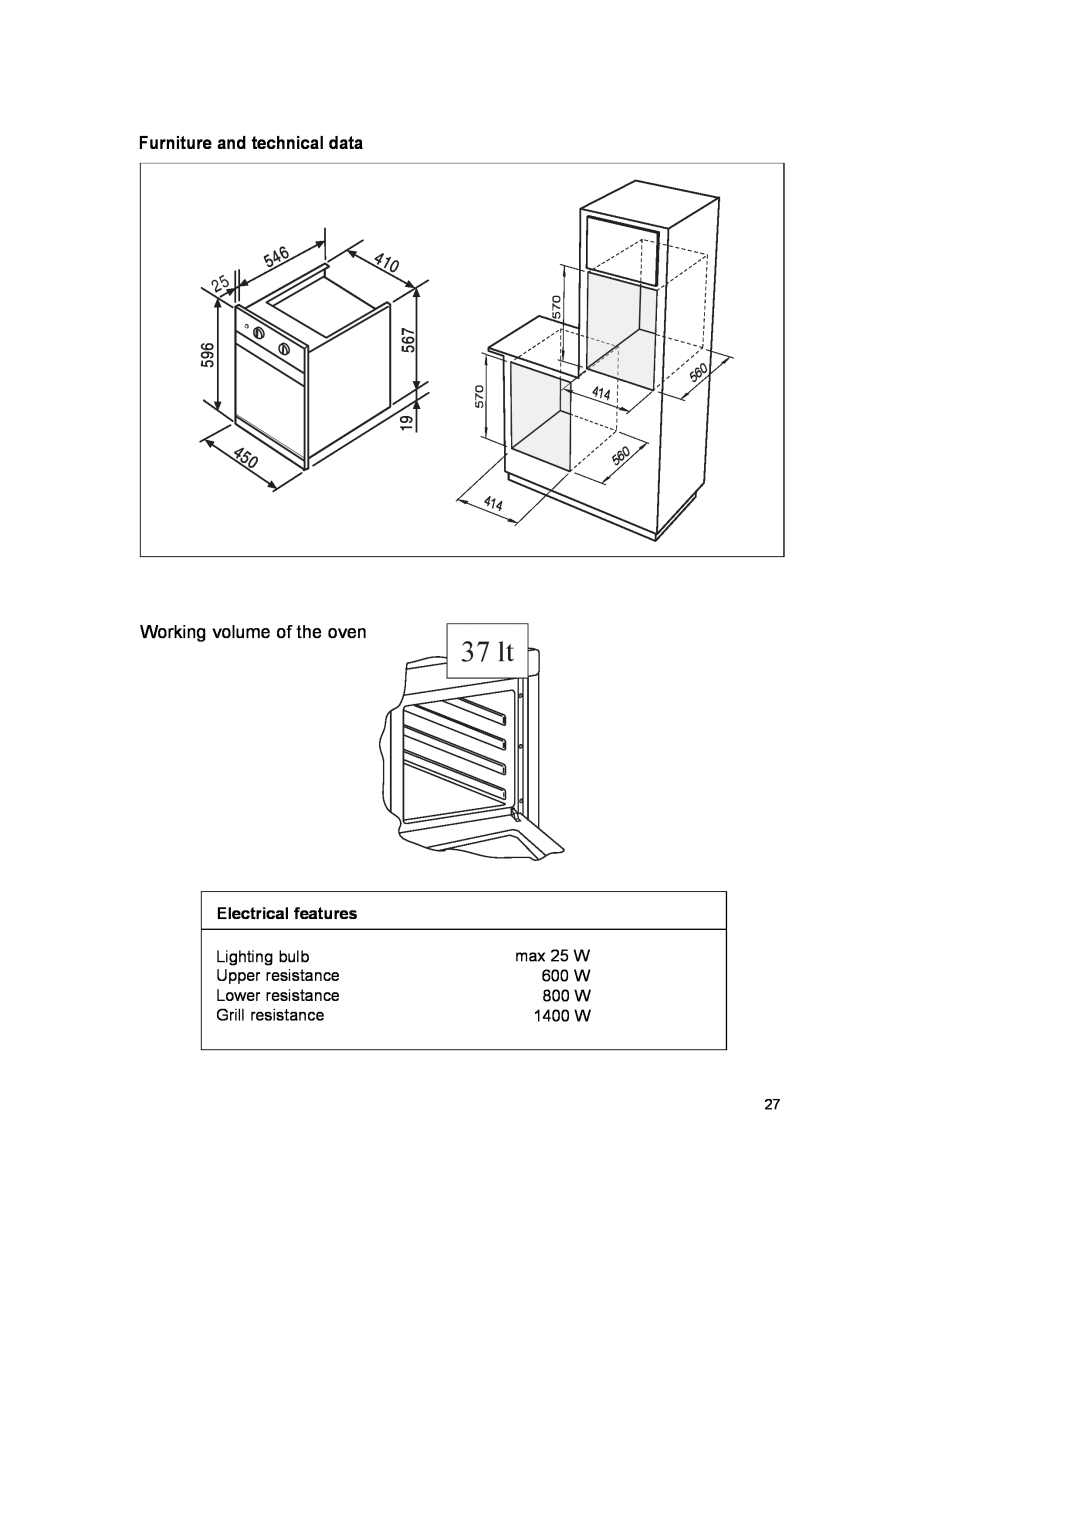 CDA SC145 manual Furniture and technical data, 37 lt 